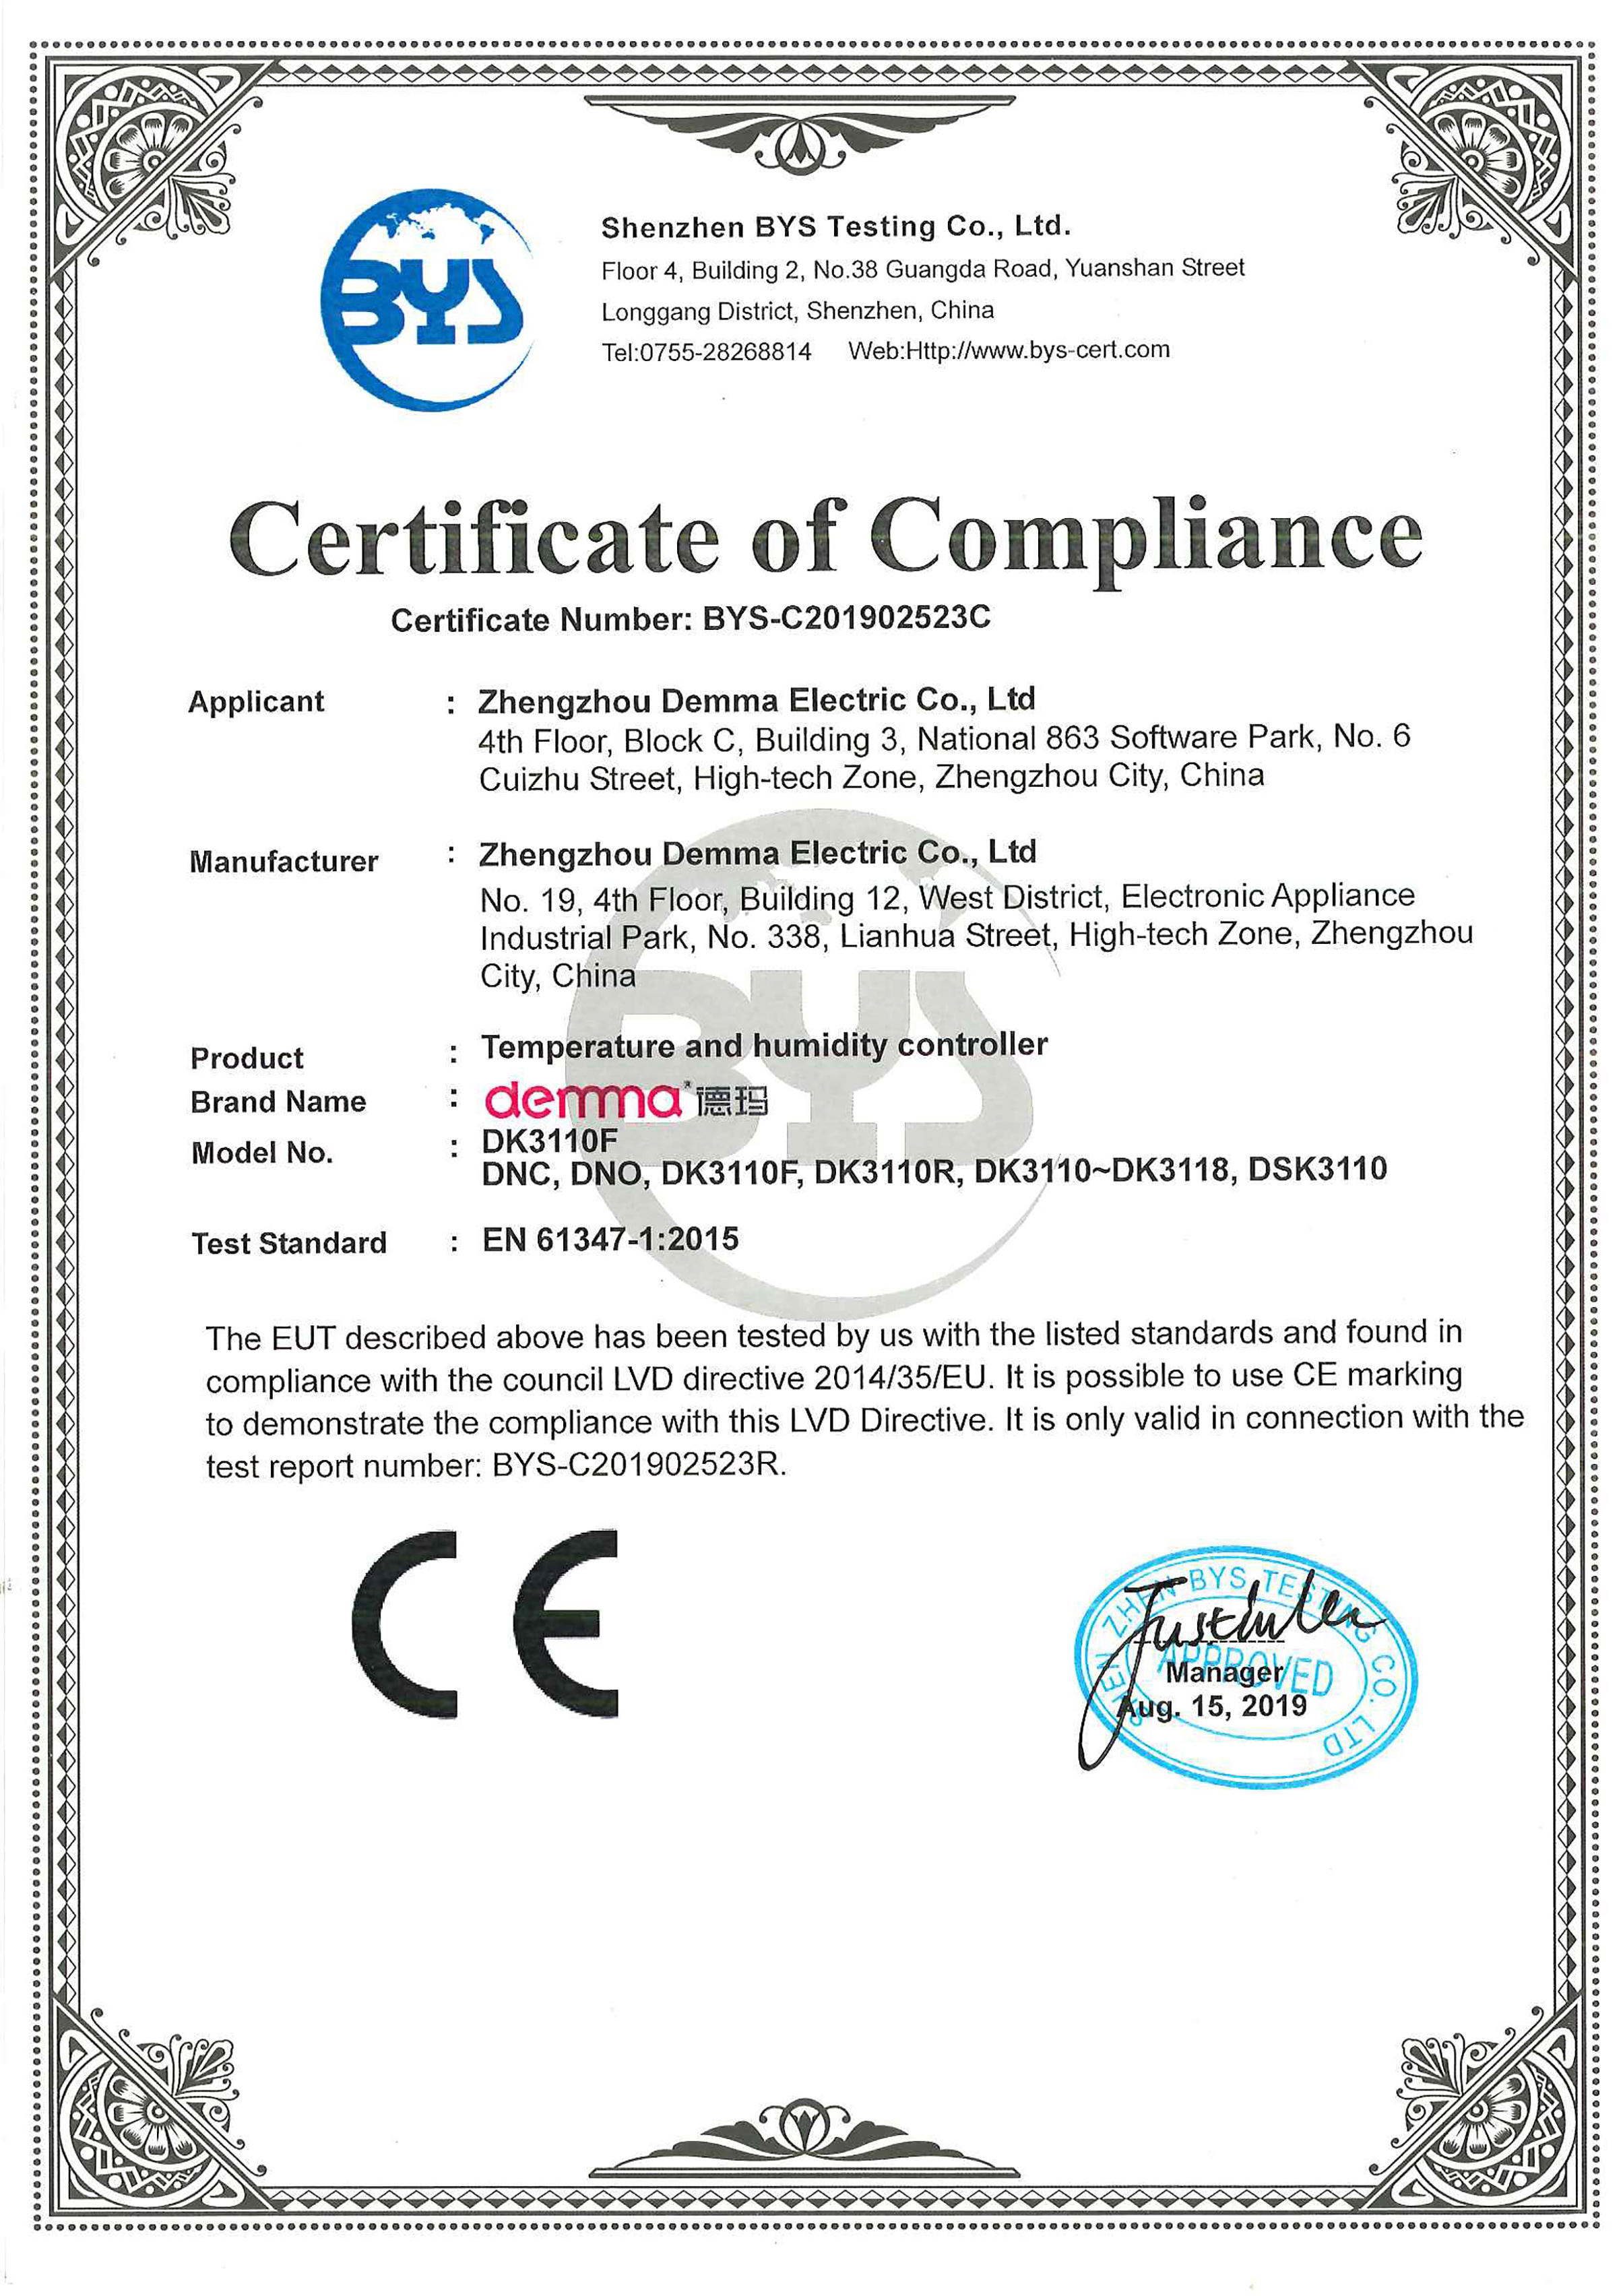 产品CE-LVD证书|温湿度控制器系列